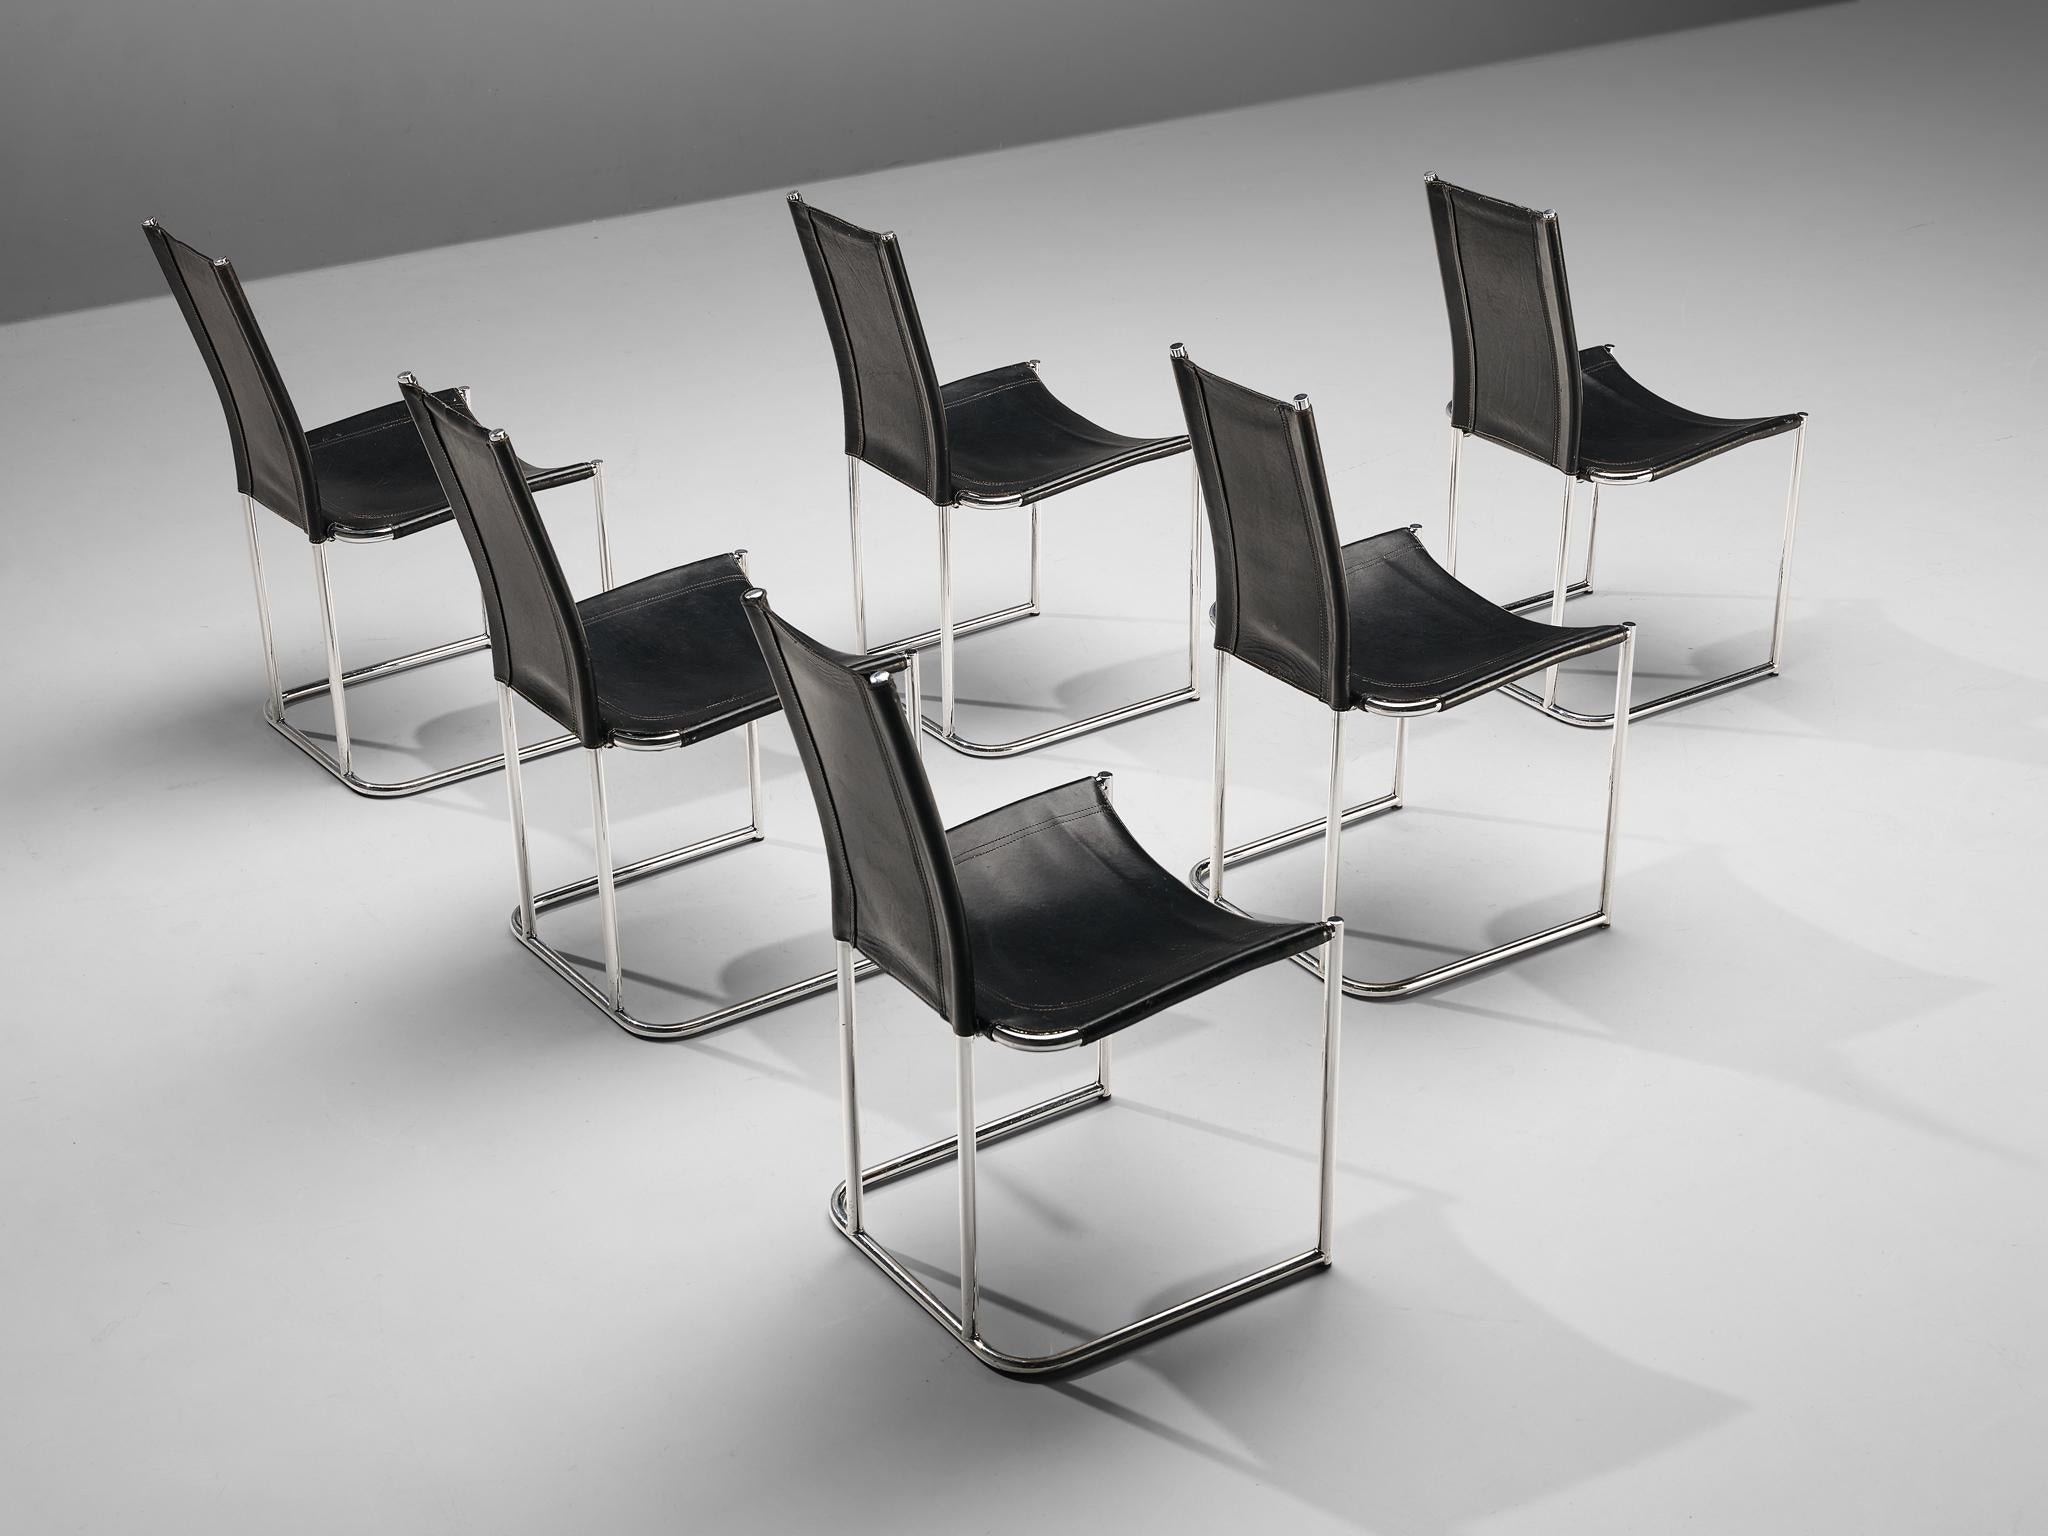 Thema Italy, ensemble de six chaises de salle à manger, métal, cuir, Italie, années 1960

Chaises de salle à manger avec structure en acier tubulaire et revêtement en cuir. Ces chaises de Thema Italy sont dotées d'un dossier distinct. L'assise et le